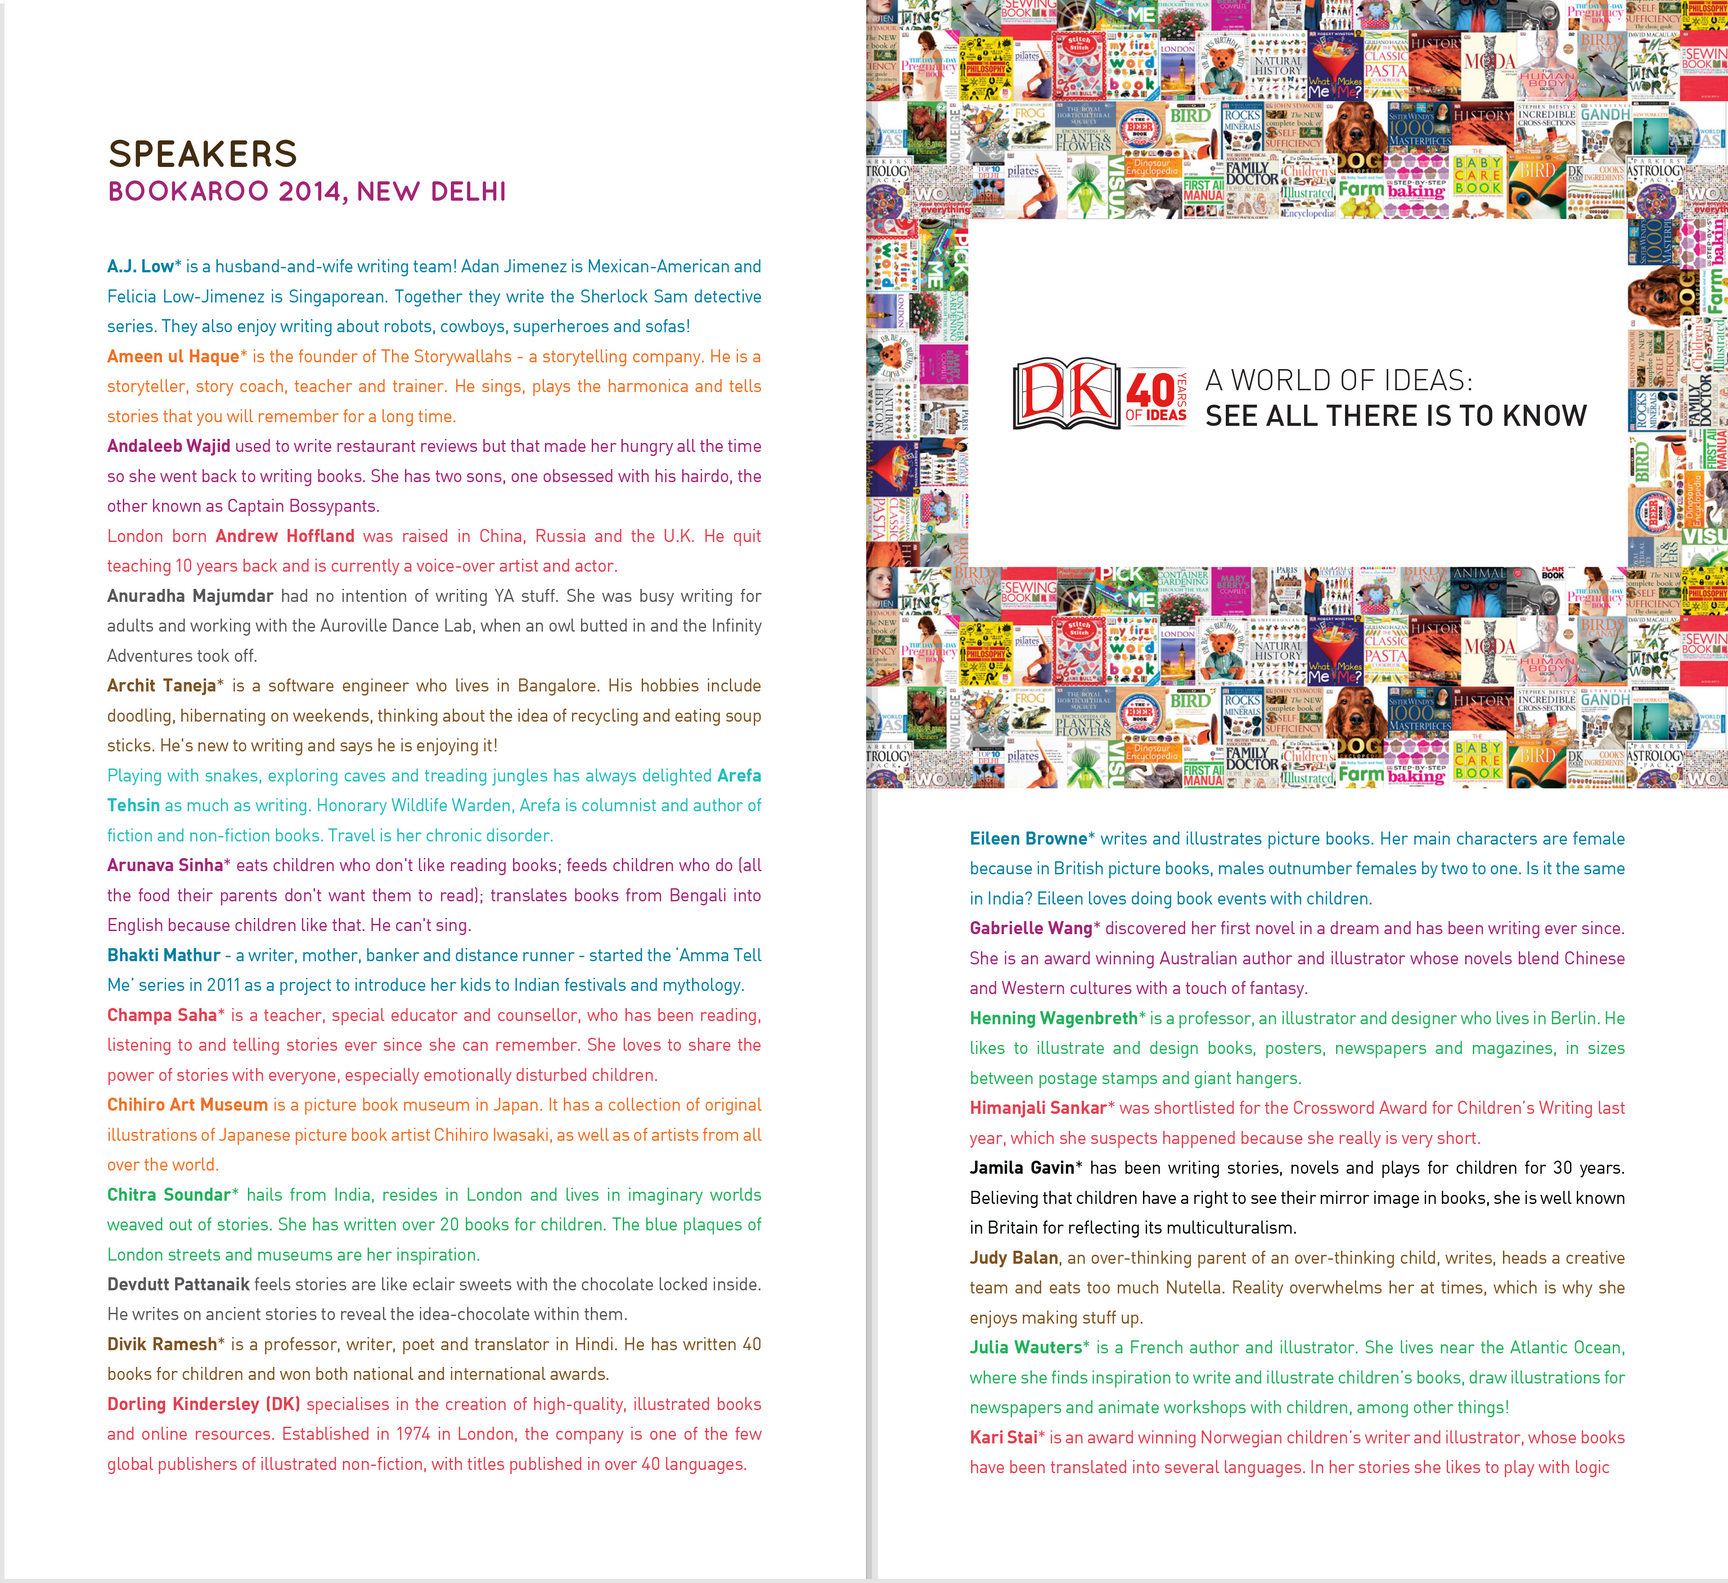 Bookaroo&#x20;2014&#x20;Brochure3